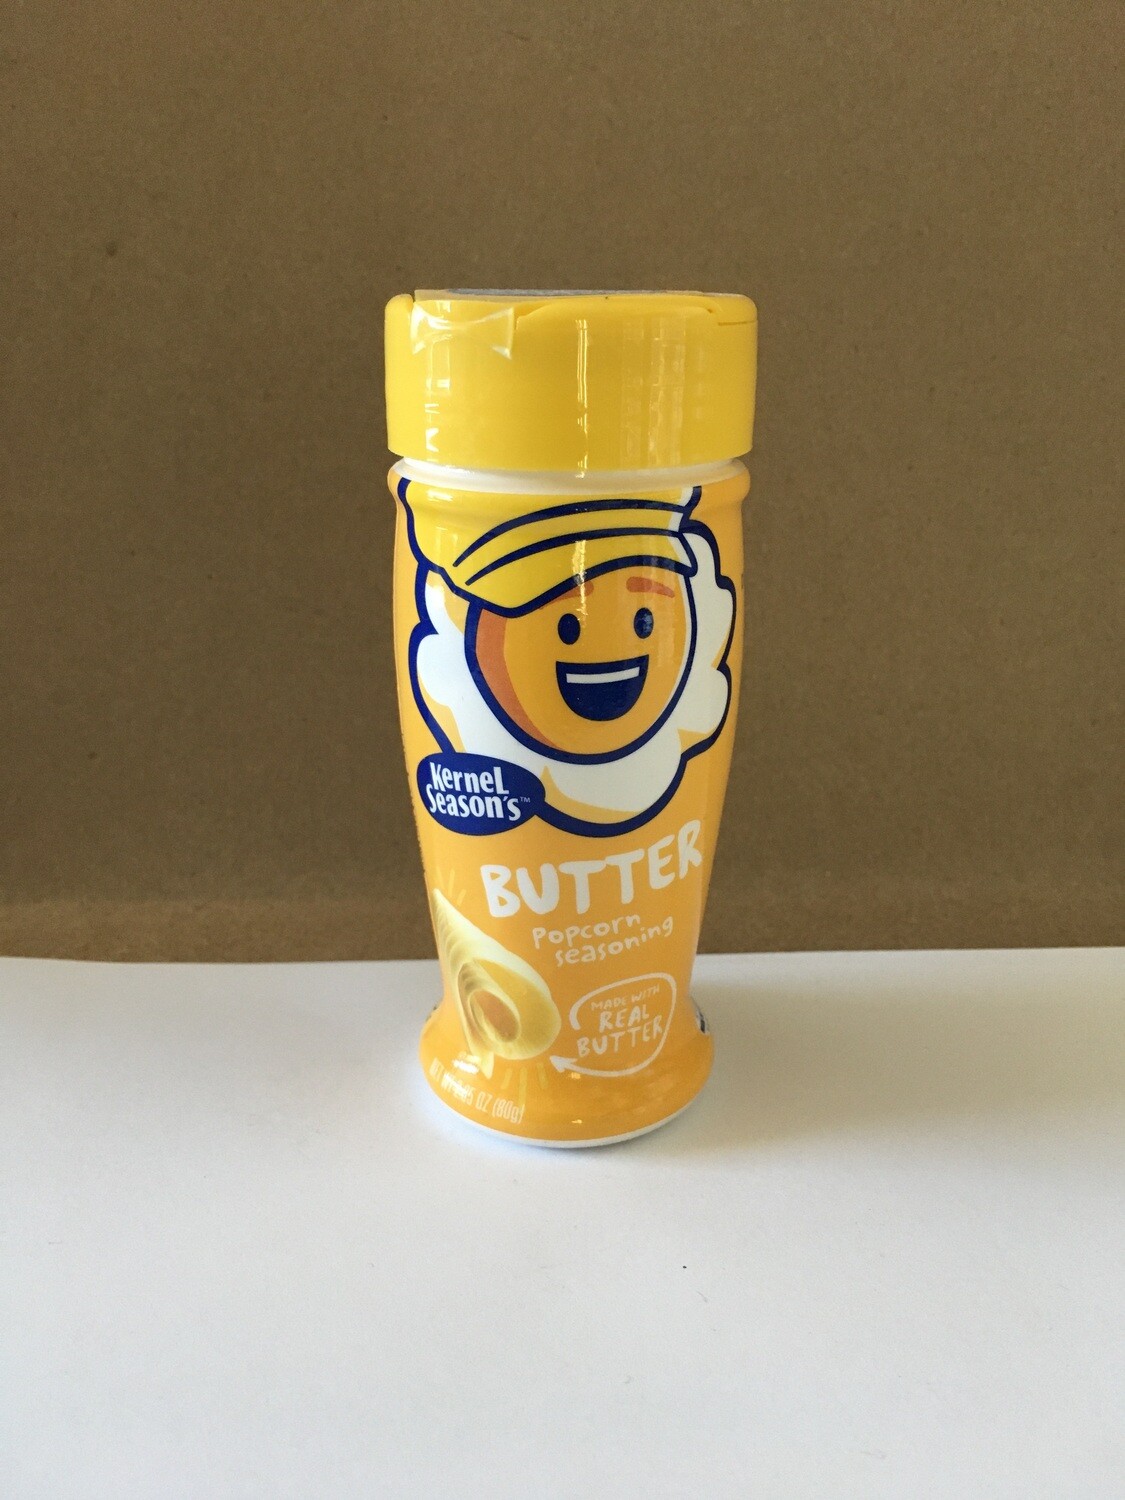 Grocery / Snack / Kernel Seasons Butter